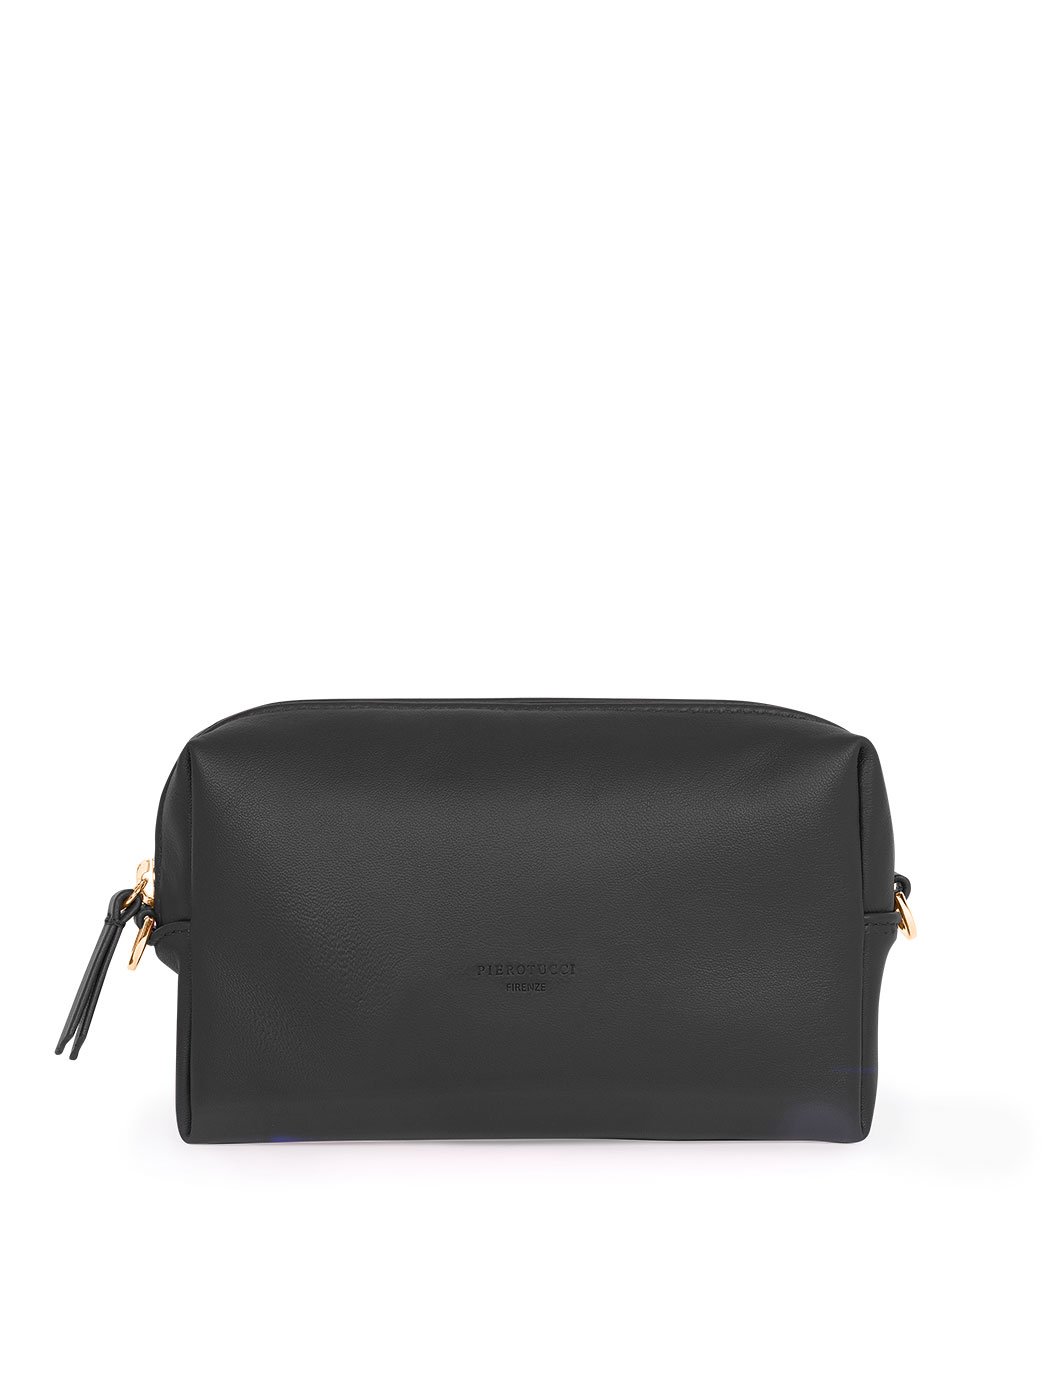 Прямоугольная сумочка с регулируемым ремнем черного цвета